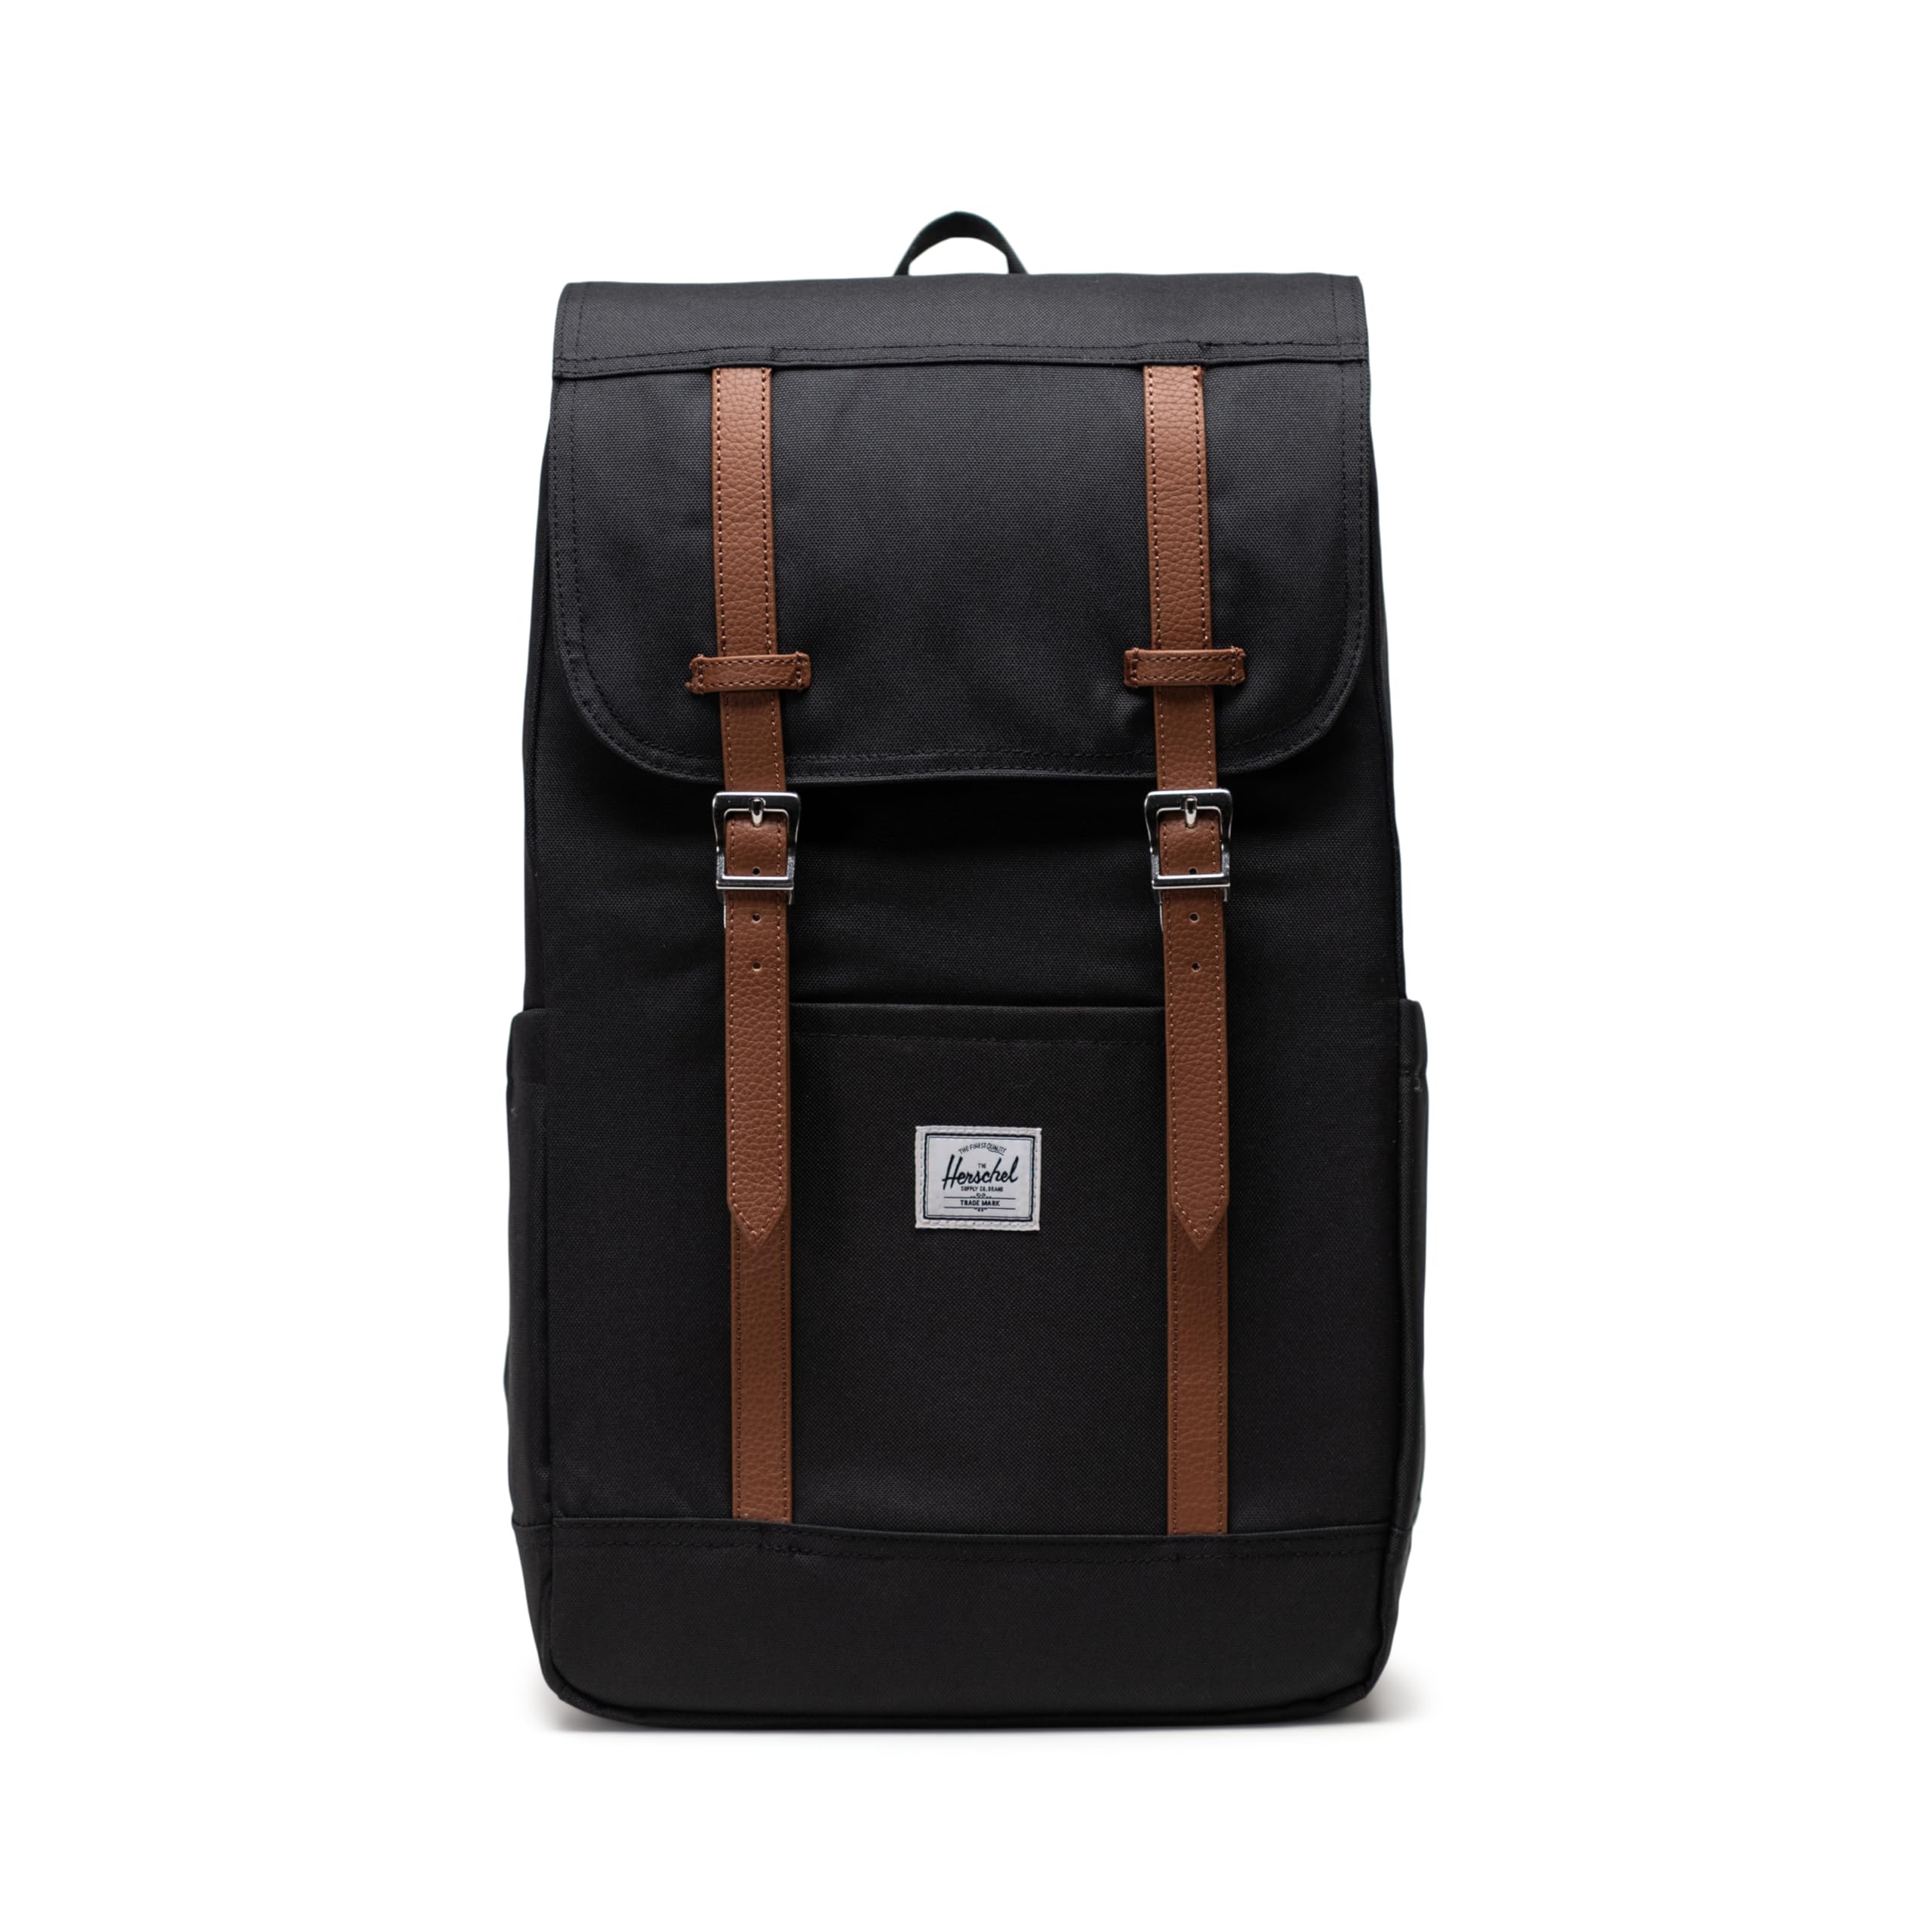 Herschel Supply Co. Herschel Retreat Backpack, Black, One Size